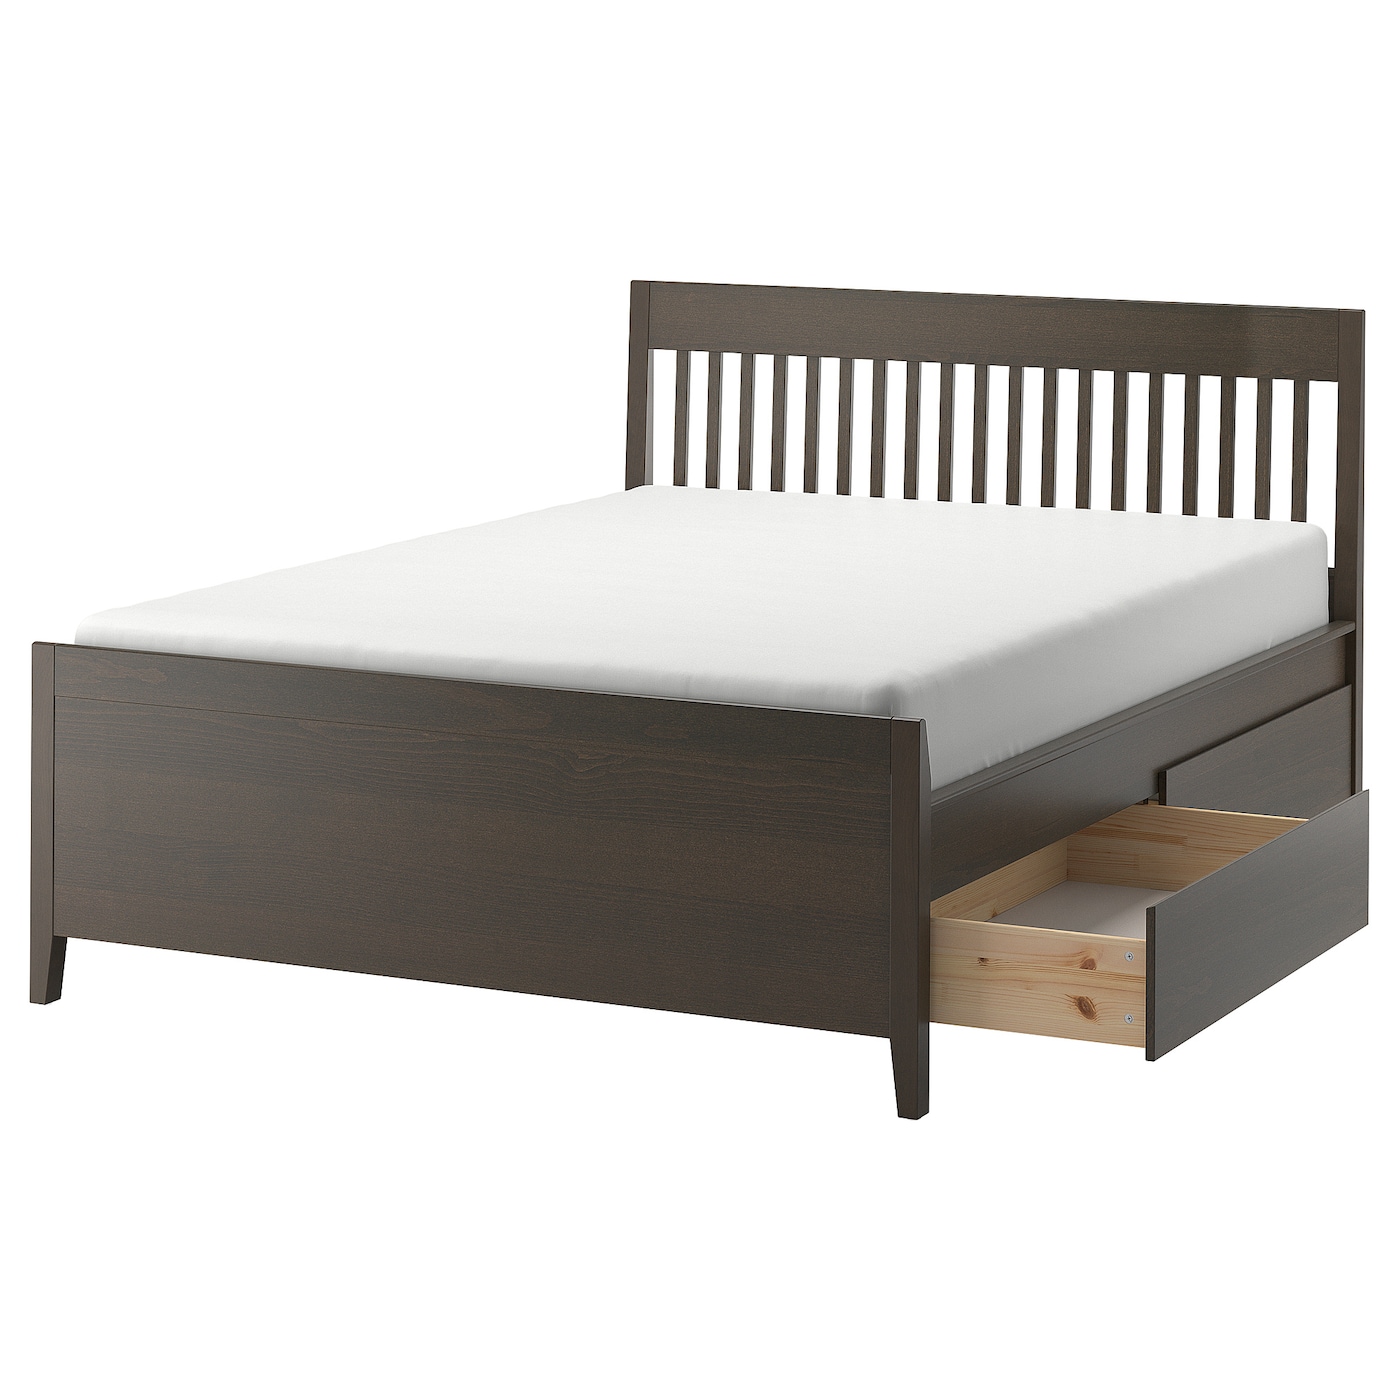 Каркас кровати с ящиками - IKEA IDANÄS/IDANAS, 200х140 см, коричневый, ИДАНЭС ИКЕА